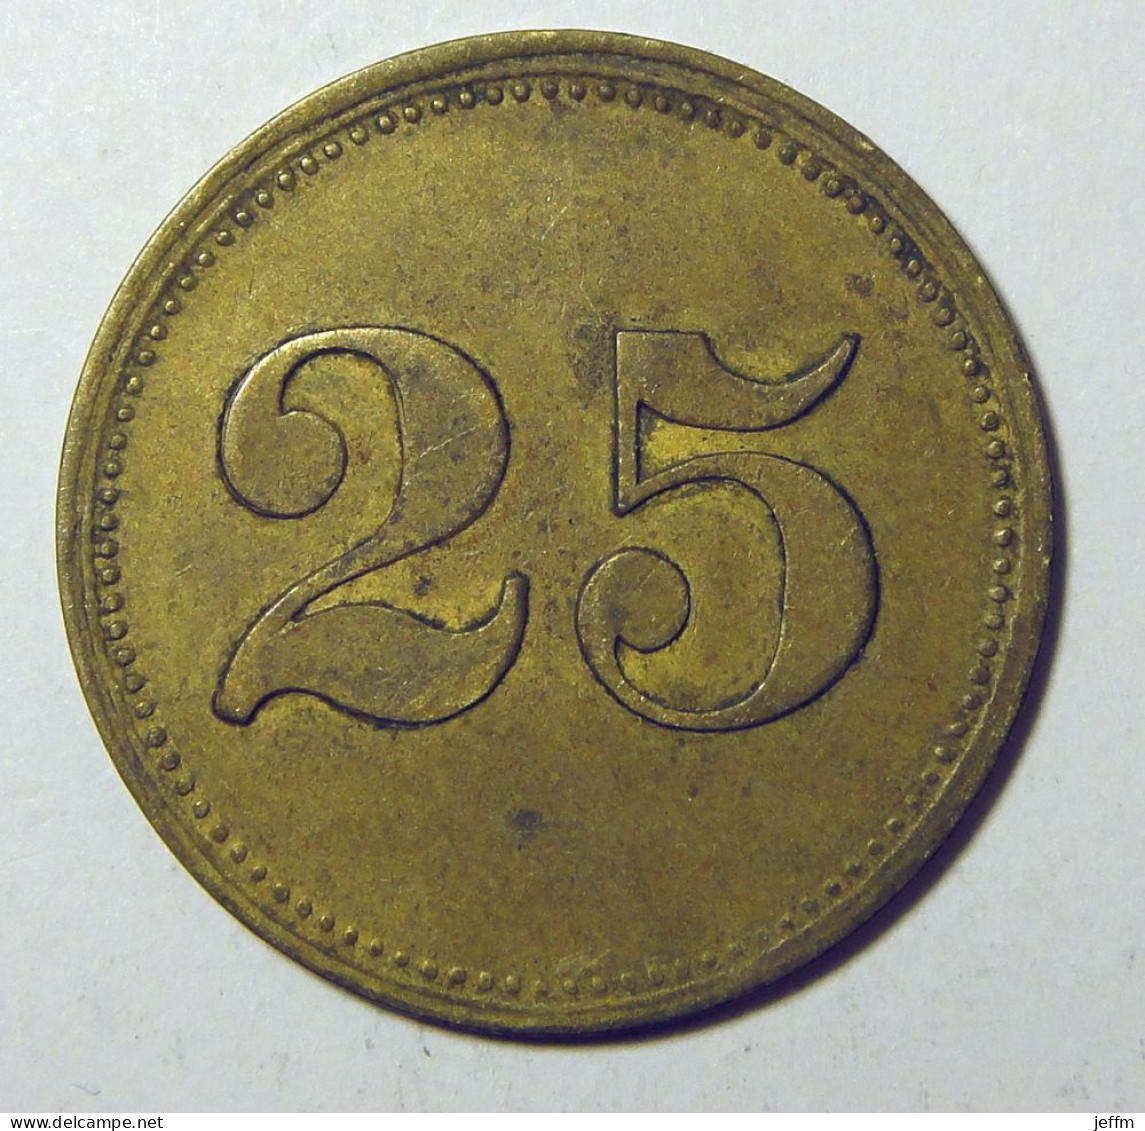 Alsace - Strasbourg - W. Korsmeier - 25 Pf. - Monedas / De Necesidad